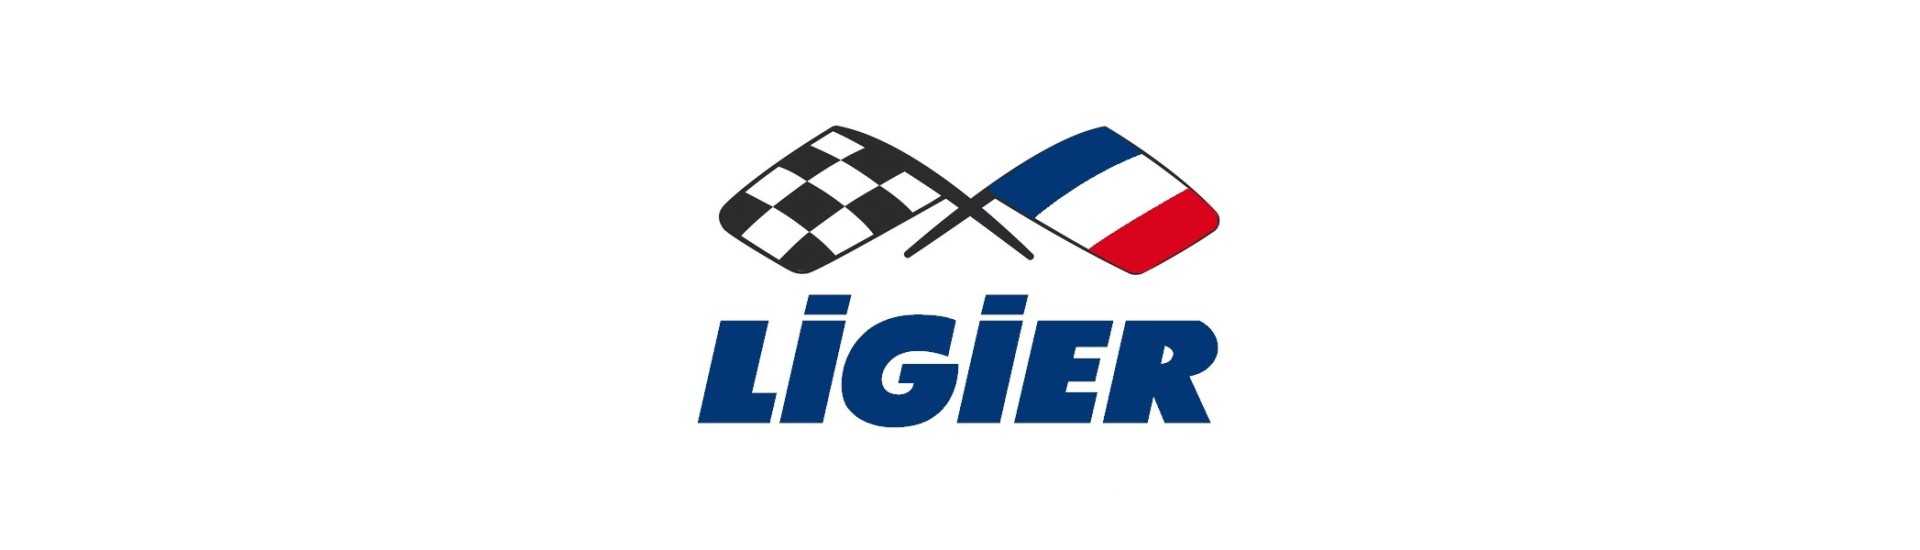 Contacteur de stop au meilleur prix pour voiture sans permis Ligier